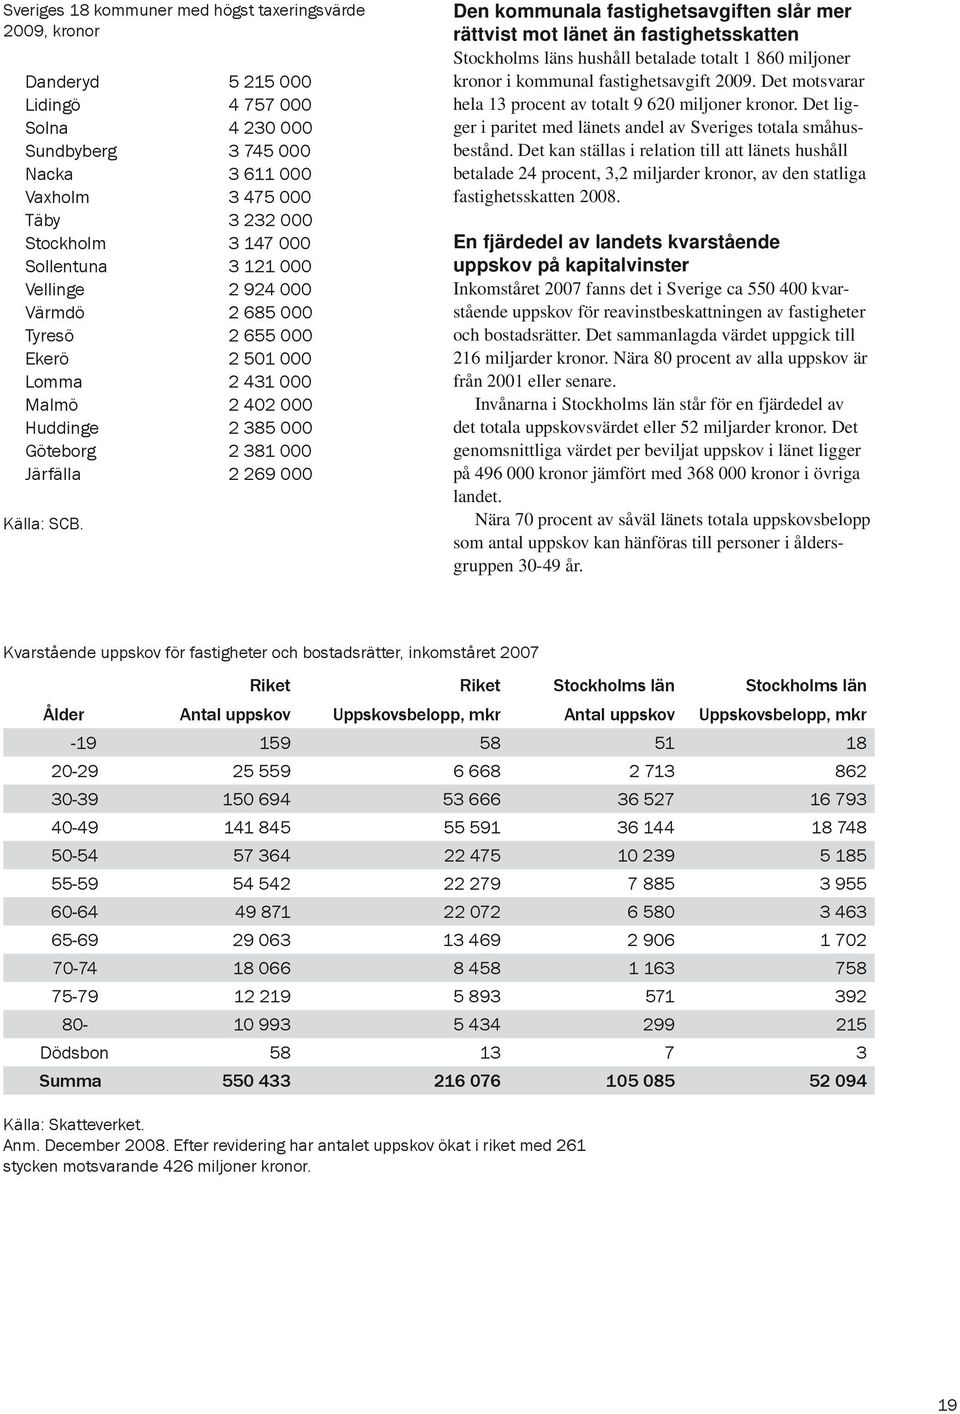 Den kommunala fastighetsavgiften slår mer rättvist mot länet än fastighetsskatten Stockholms läns hushåll betalade totalt 1 860 miljoner kronor i kommunal fastighetsavgift 2009.